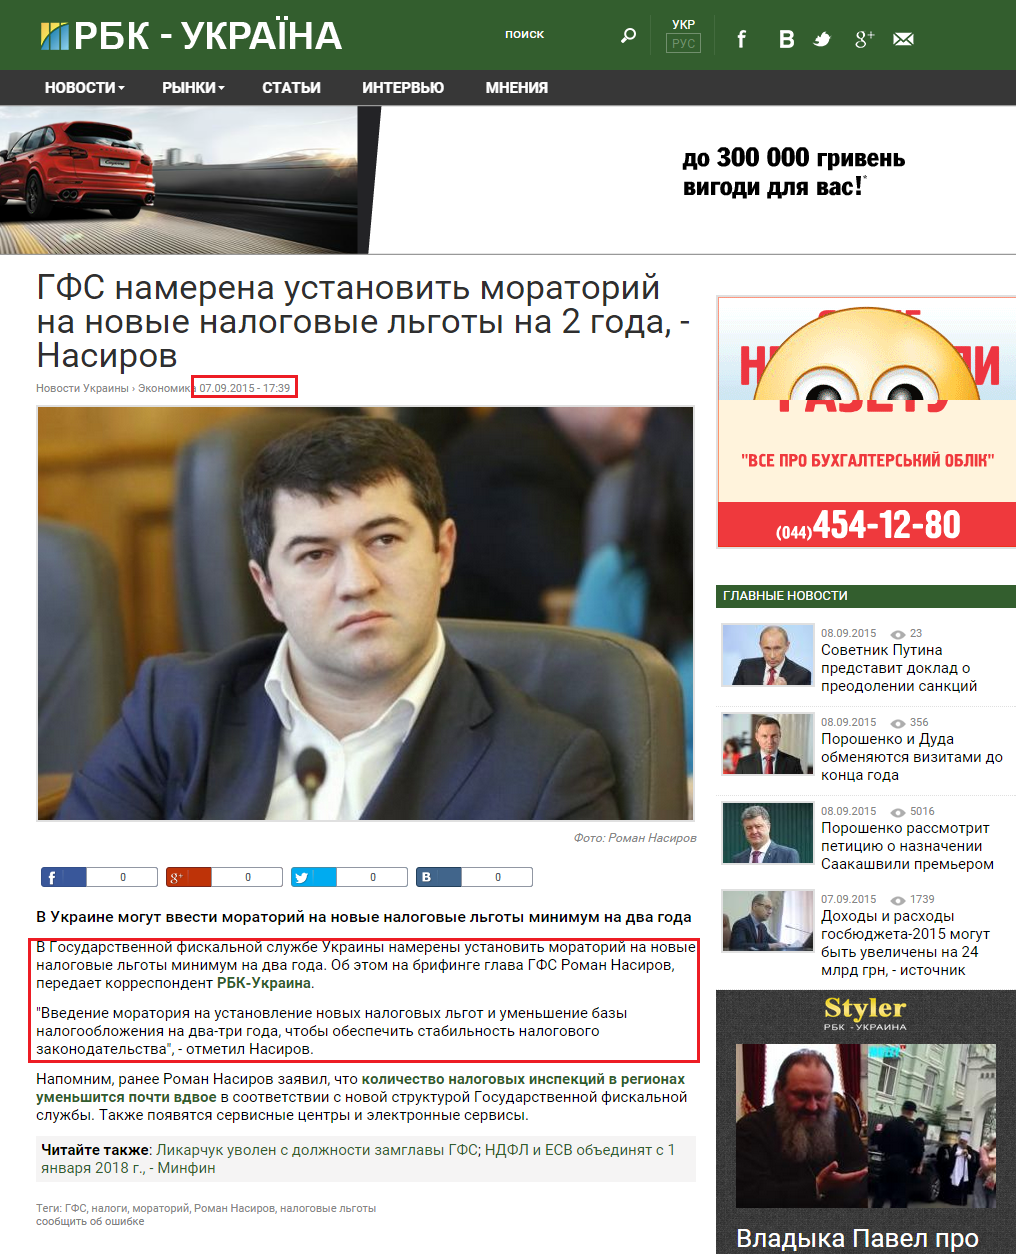 http://www.rbc.ua/rus/news/gfs-namerena-ustanovit-moratoriy-novye-nalogovye-1441635942.html